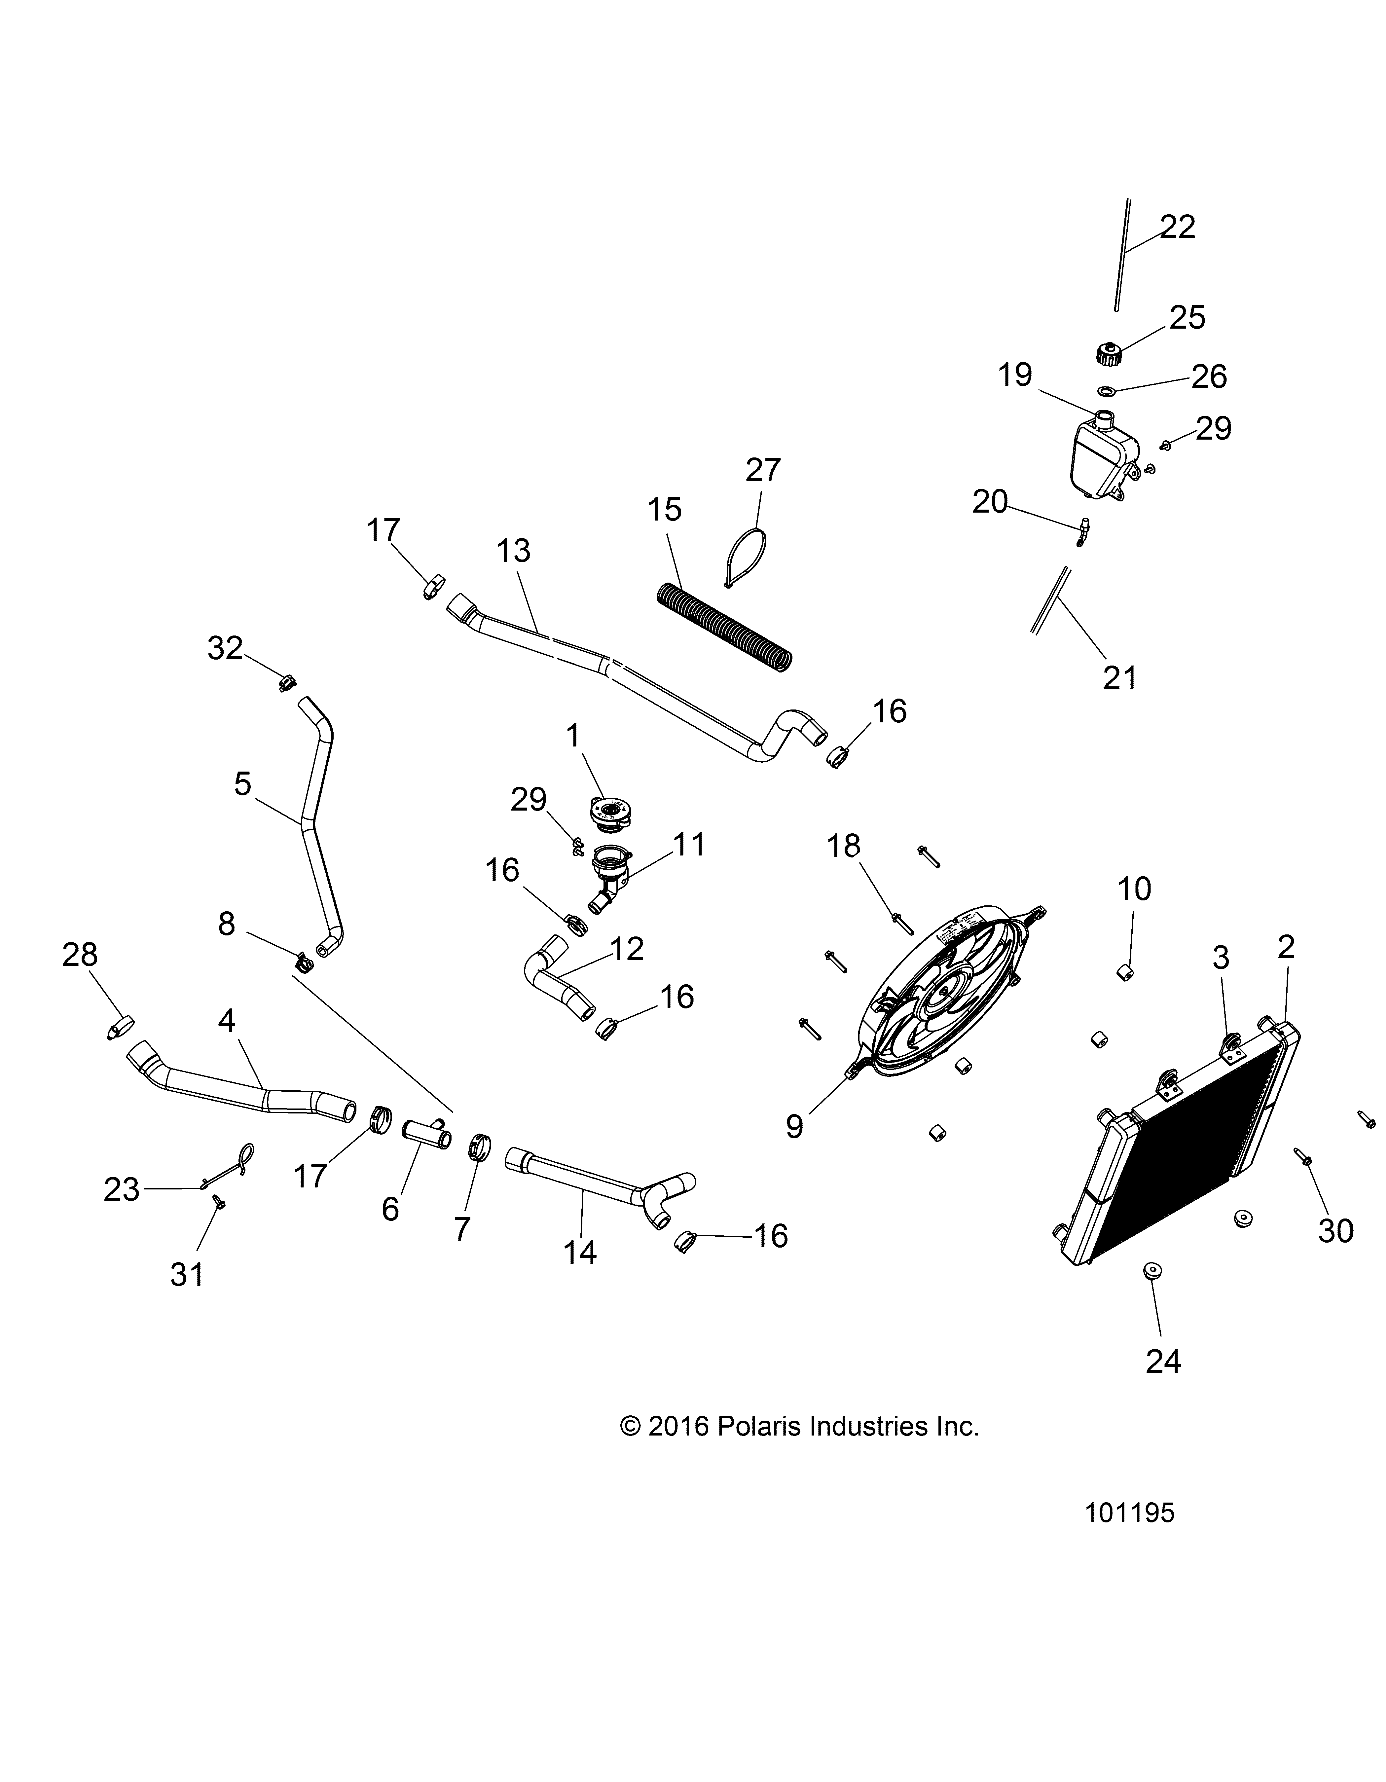 Foto diagrama Polaris que contem a peça 1240520